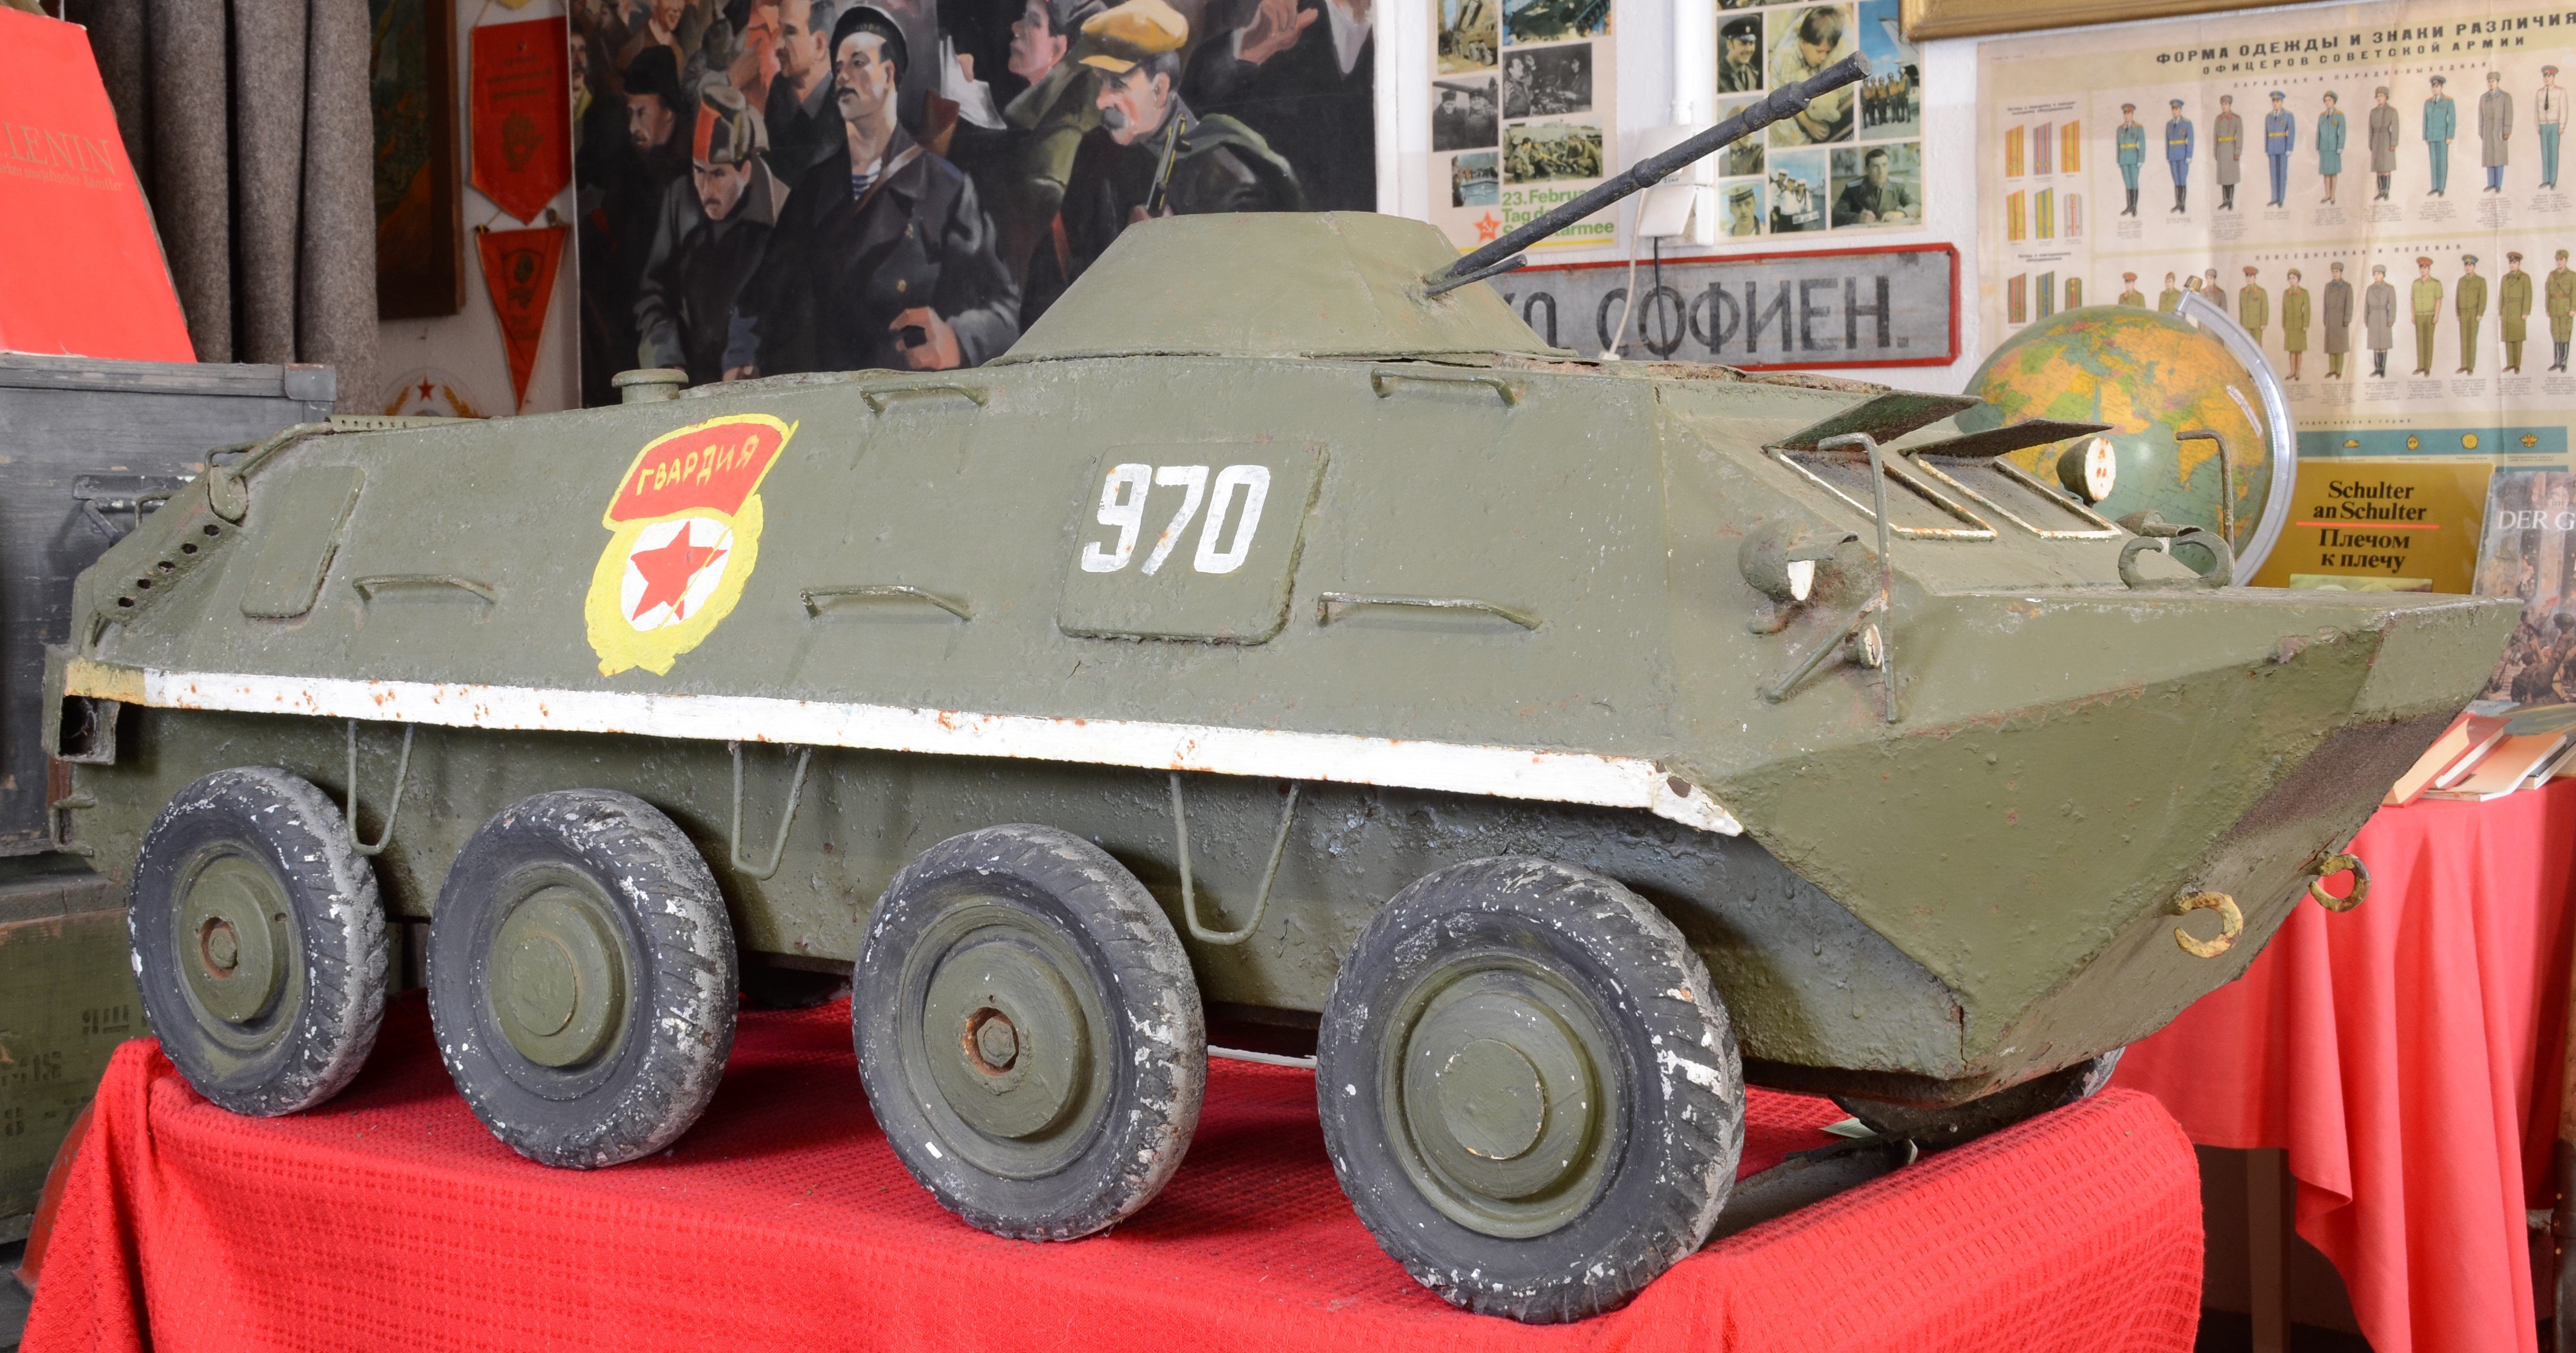 Modell eines Schützenpanzerwagens (DDR Geschichtsmuseum im Dokumentationszentrum Perleberg CC BY-SA)